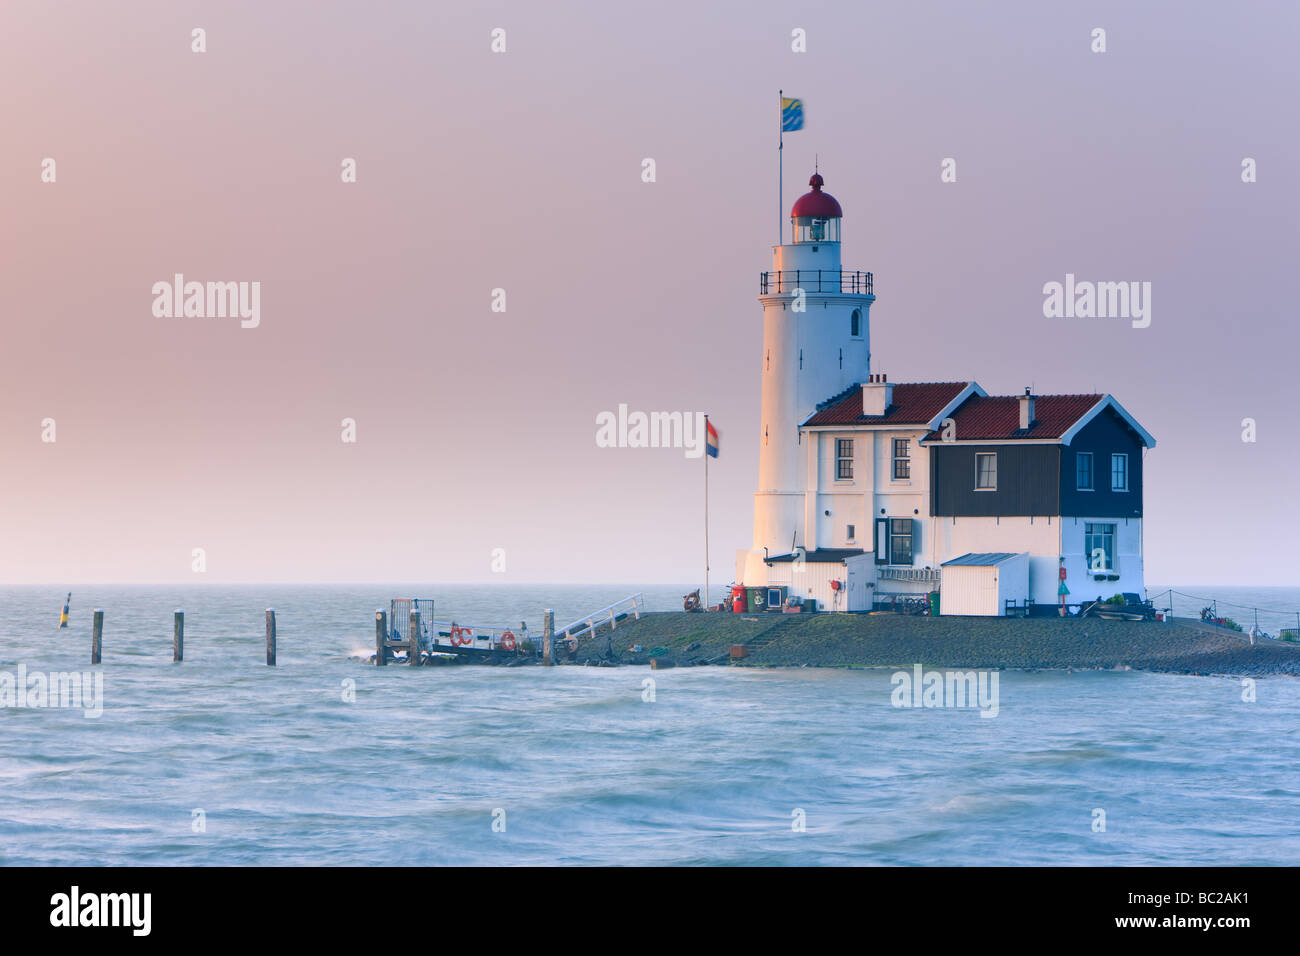 Sunrise Lighthouse Paard van Marken on Lake IJssel, close to Amsterdam, Netherlands Stock Photo